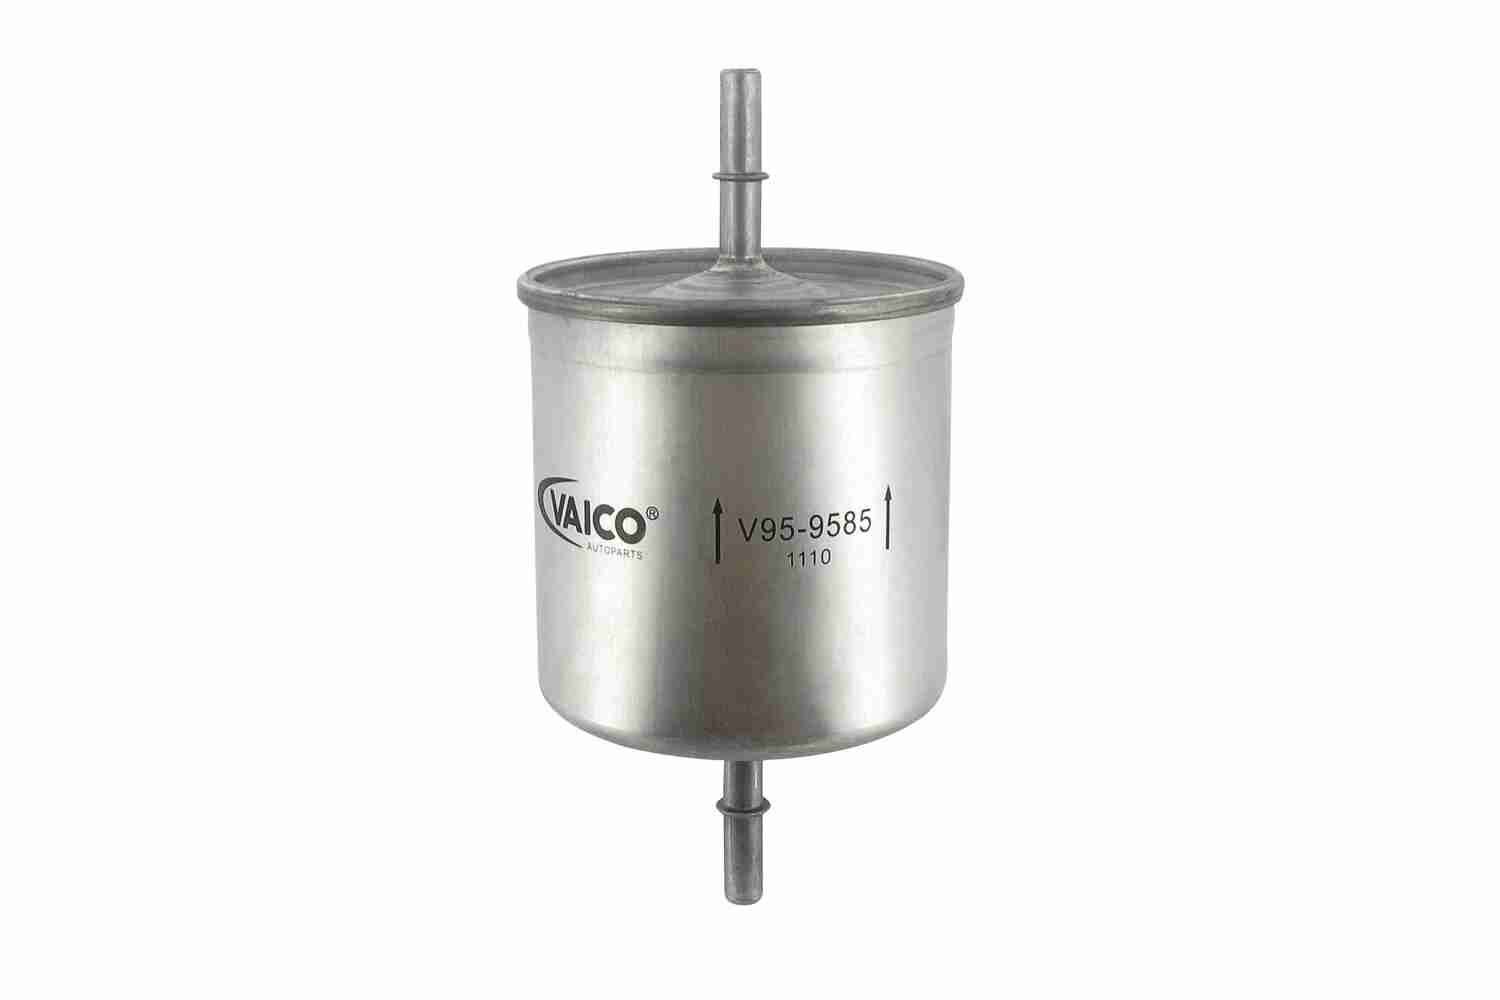 VAICO V95-9585 Fuel filter In-Line Filter, 8mm, 8mm, Original VAICO Quality